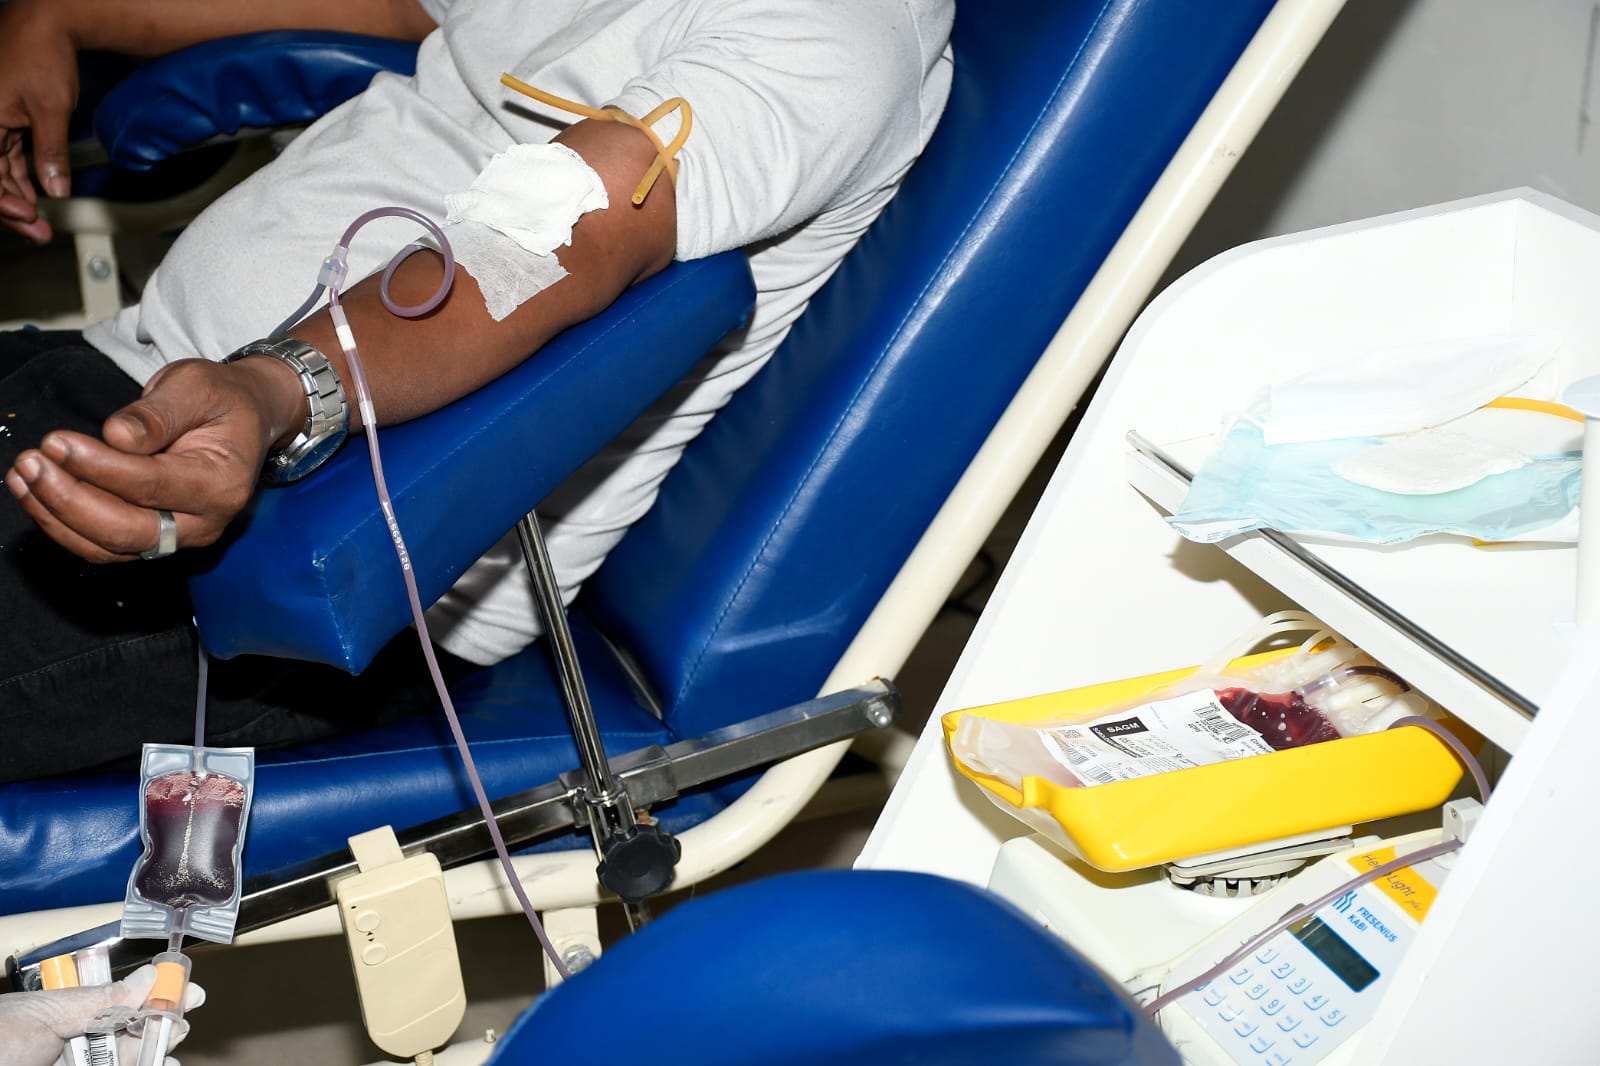 Hospital Geral de Nova Iguaçu promove campanha de doação de sangue com horário estendido